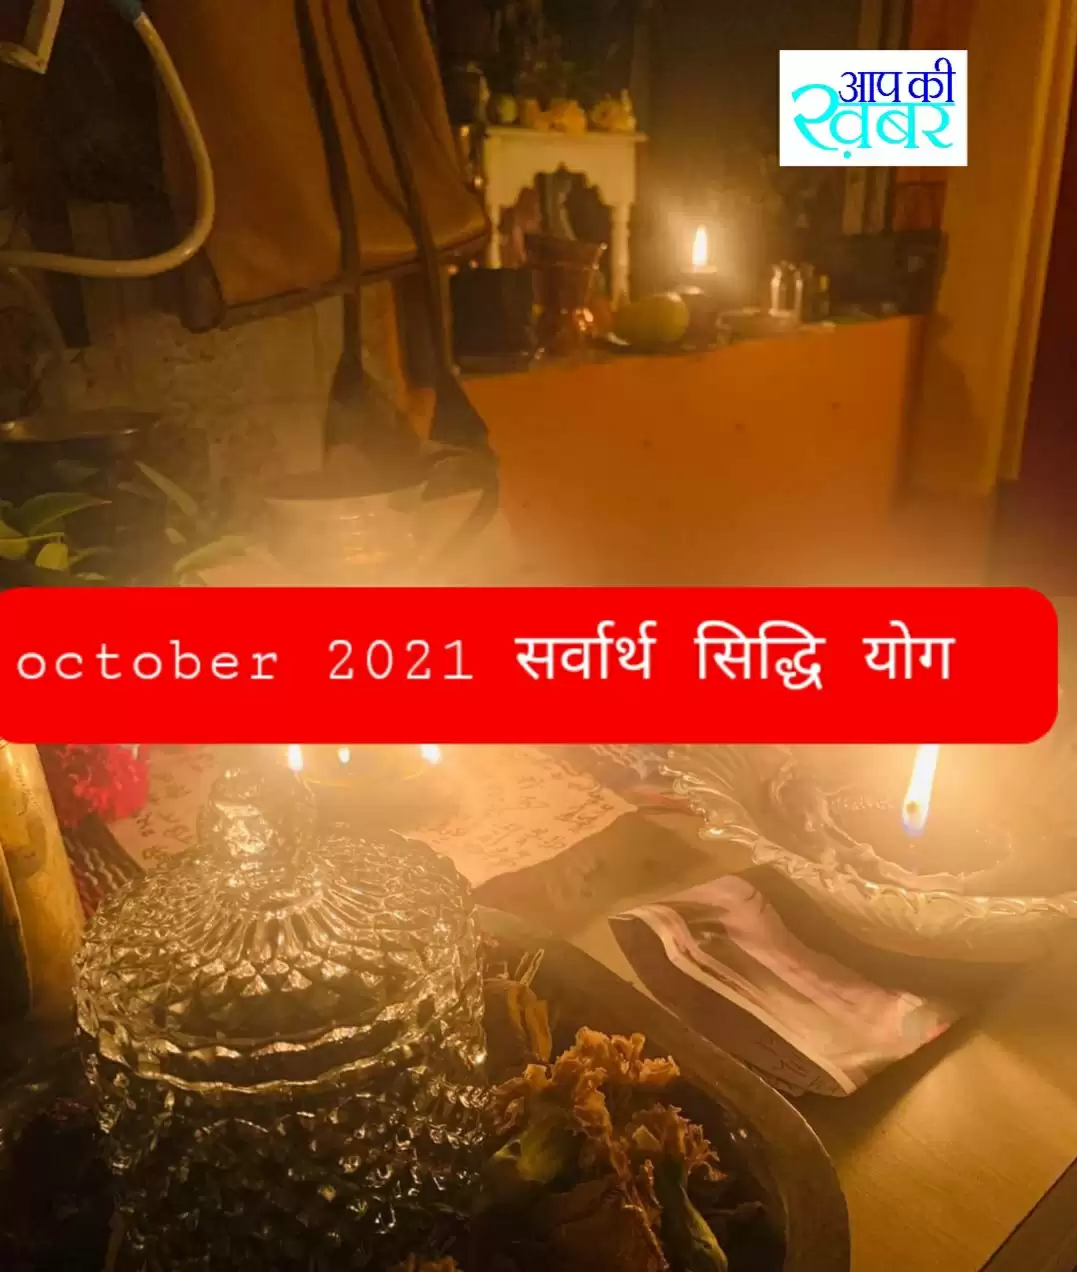 Sarwarth sidh yog october 2021